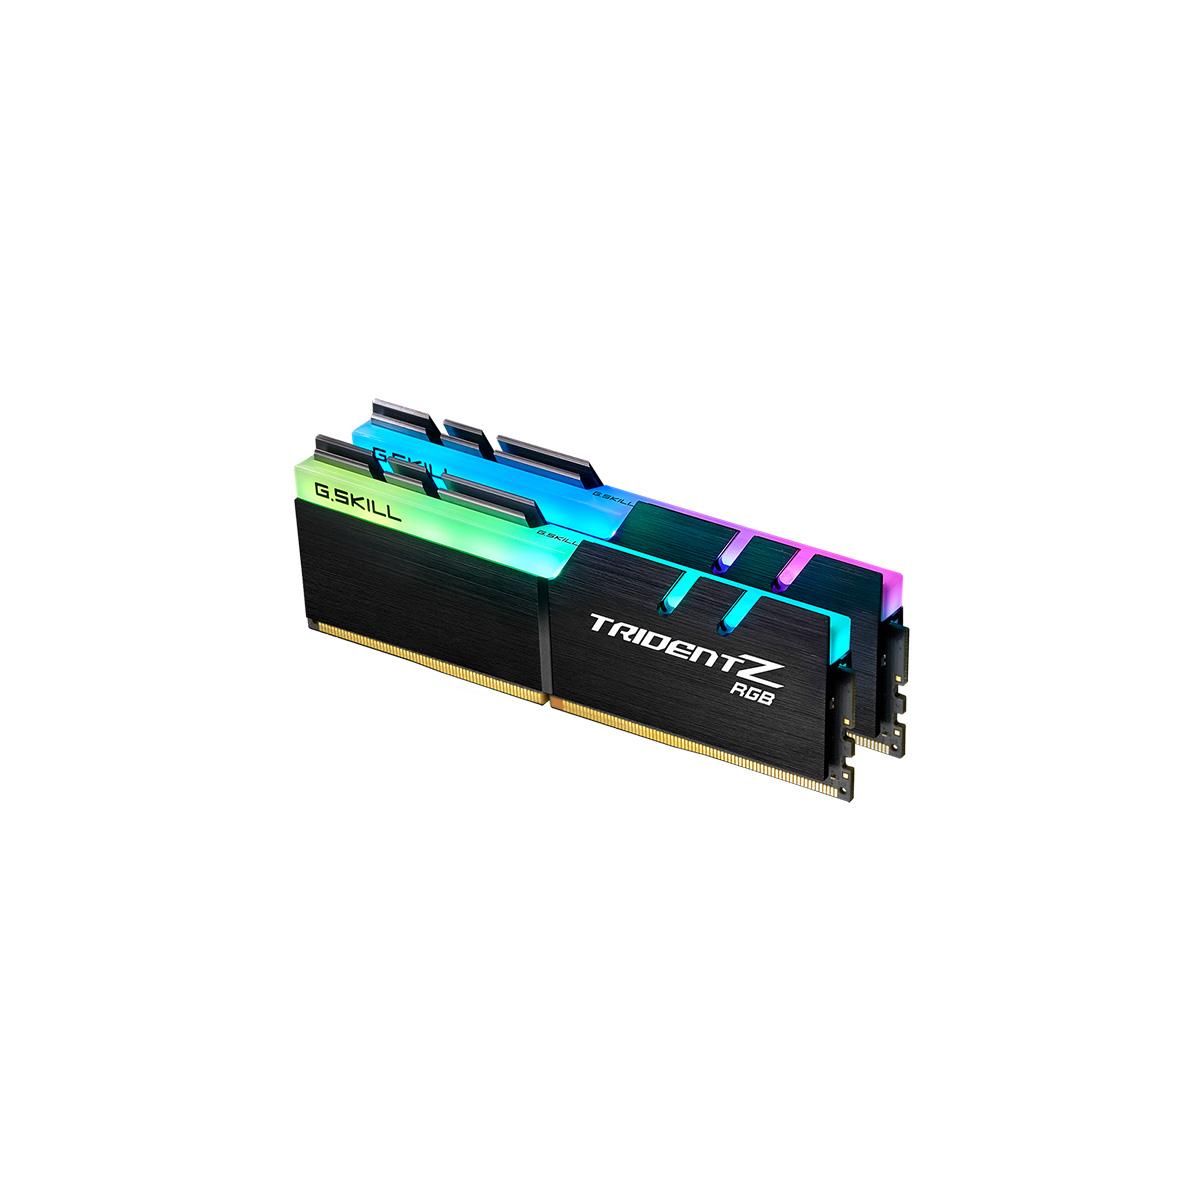 MEMORIA DIMM DDR4 G.SKILL (F4-4000C18D-64GTZR) 64GB (2X32GB) 4000 MHZ, TRIDENT Z RGB - F4-4000C18D-64GTZR